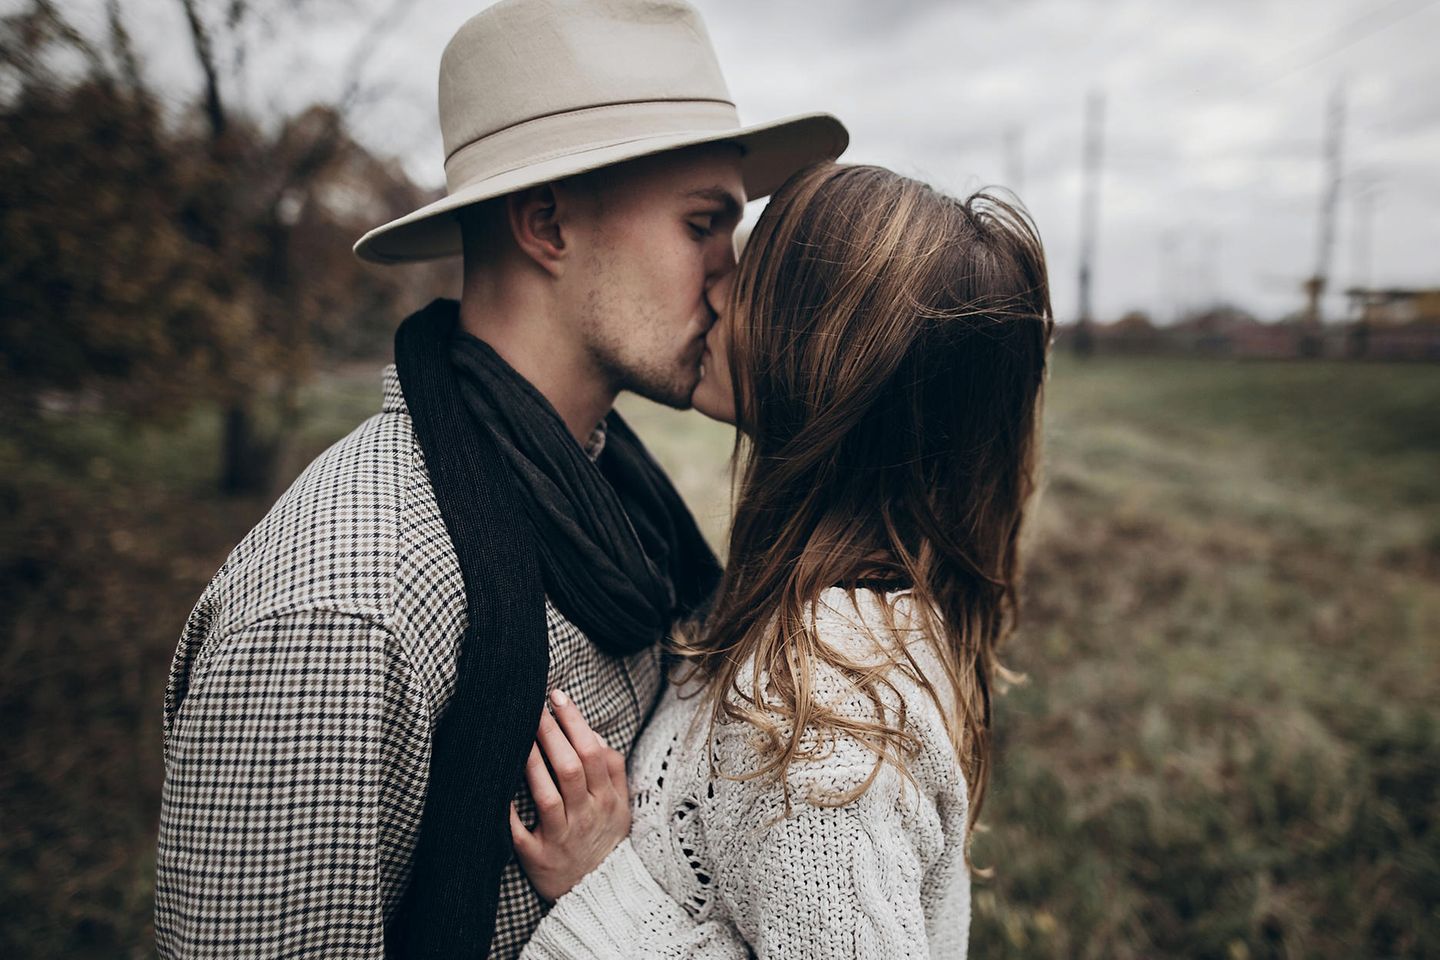 Selbstbewusste Sätze in der Beziehung: Paar küsst sich